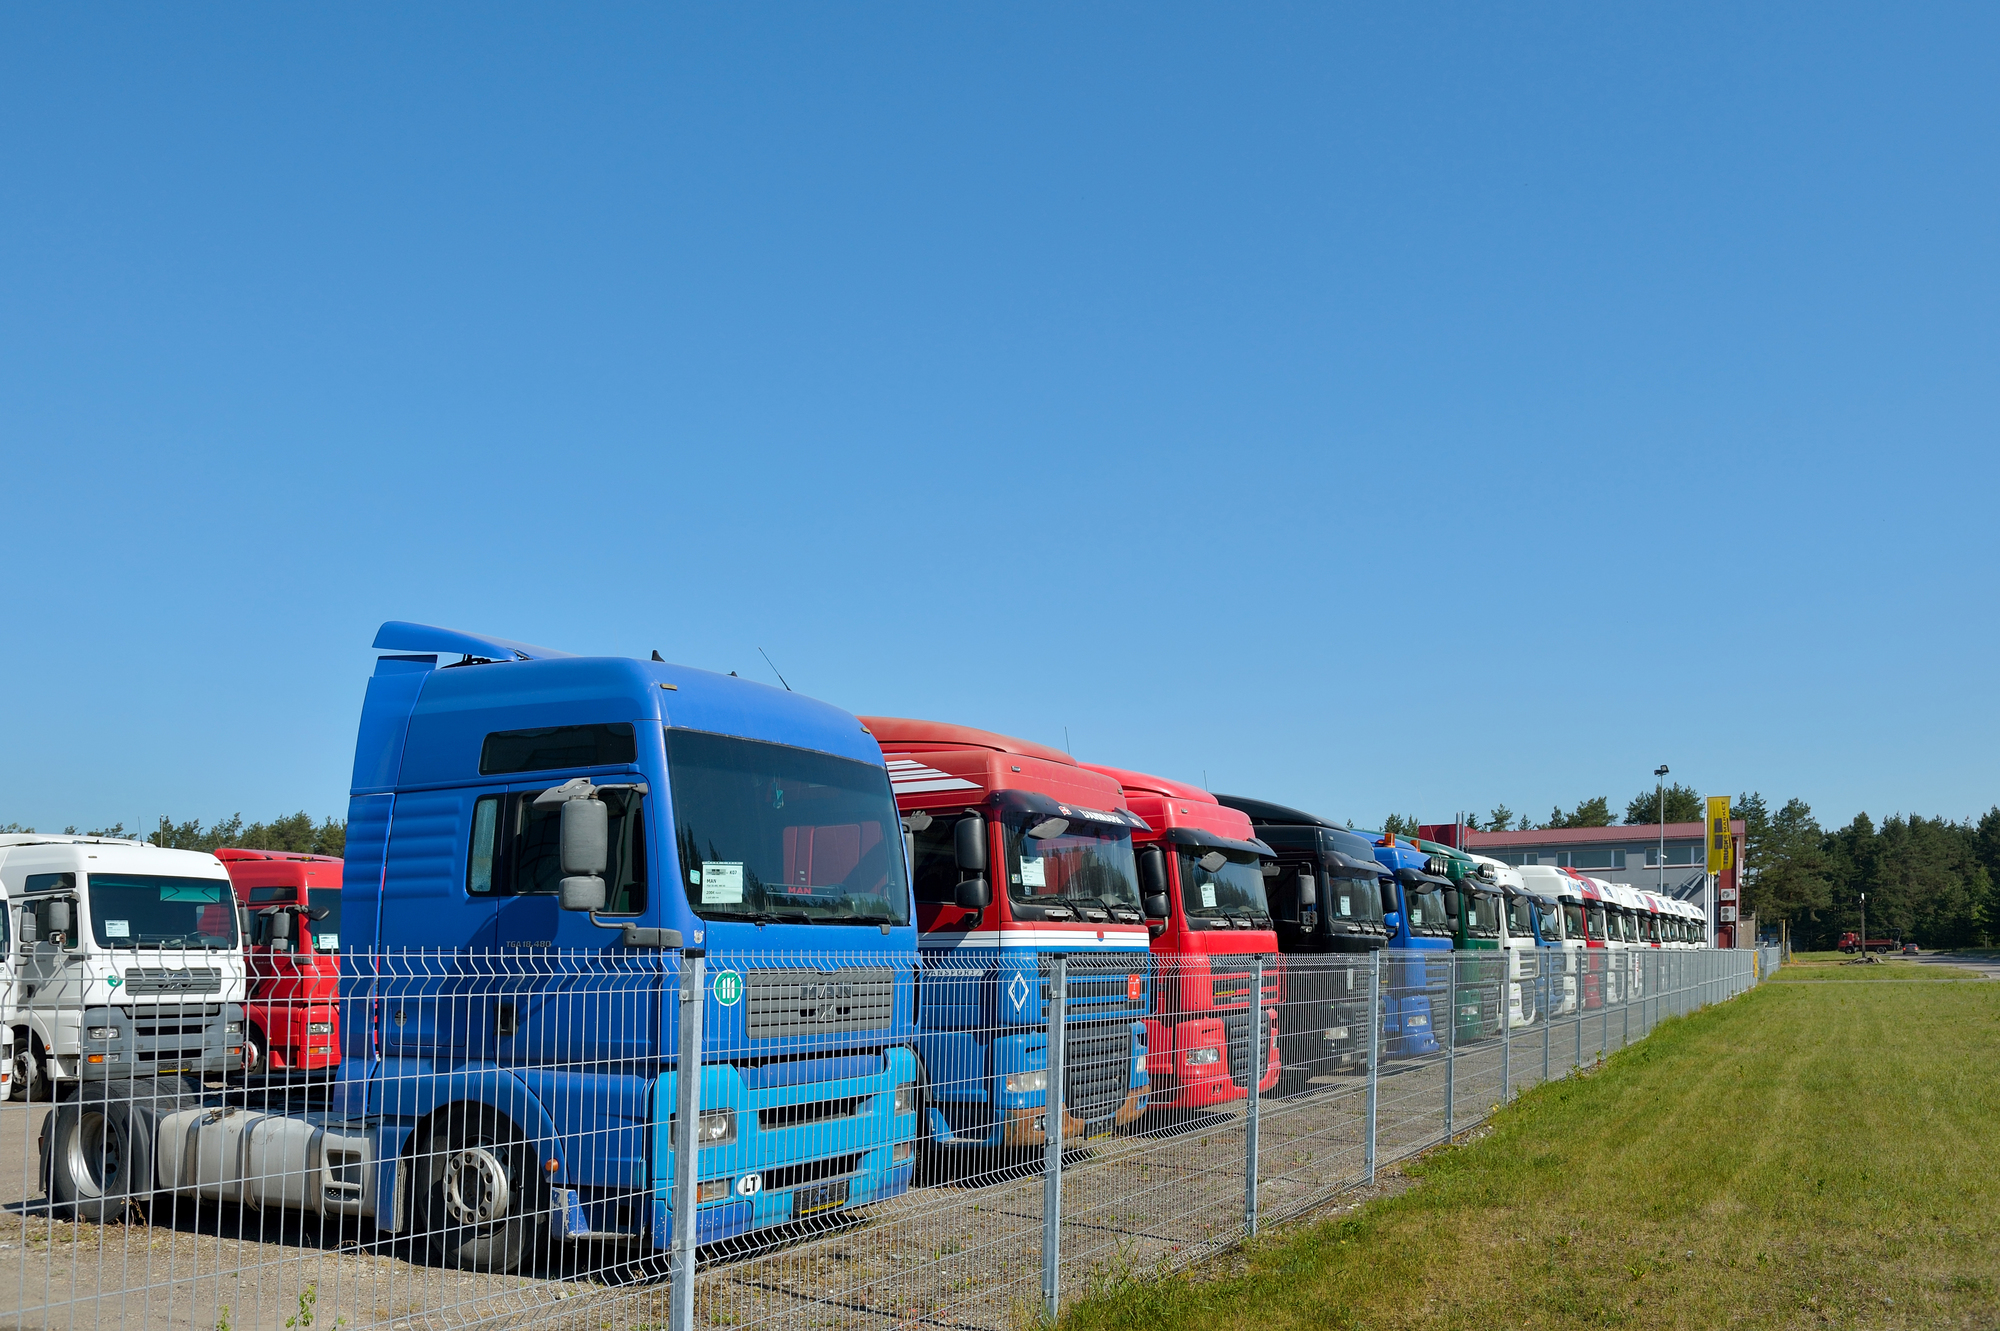 UAB 'Trucks Market' undefined: kuva UAB 'Trucks Market' undefined